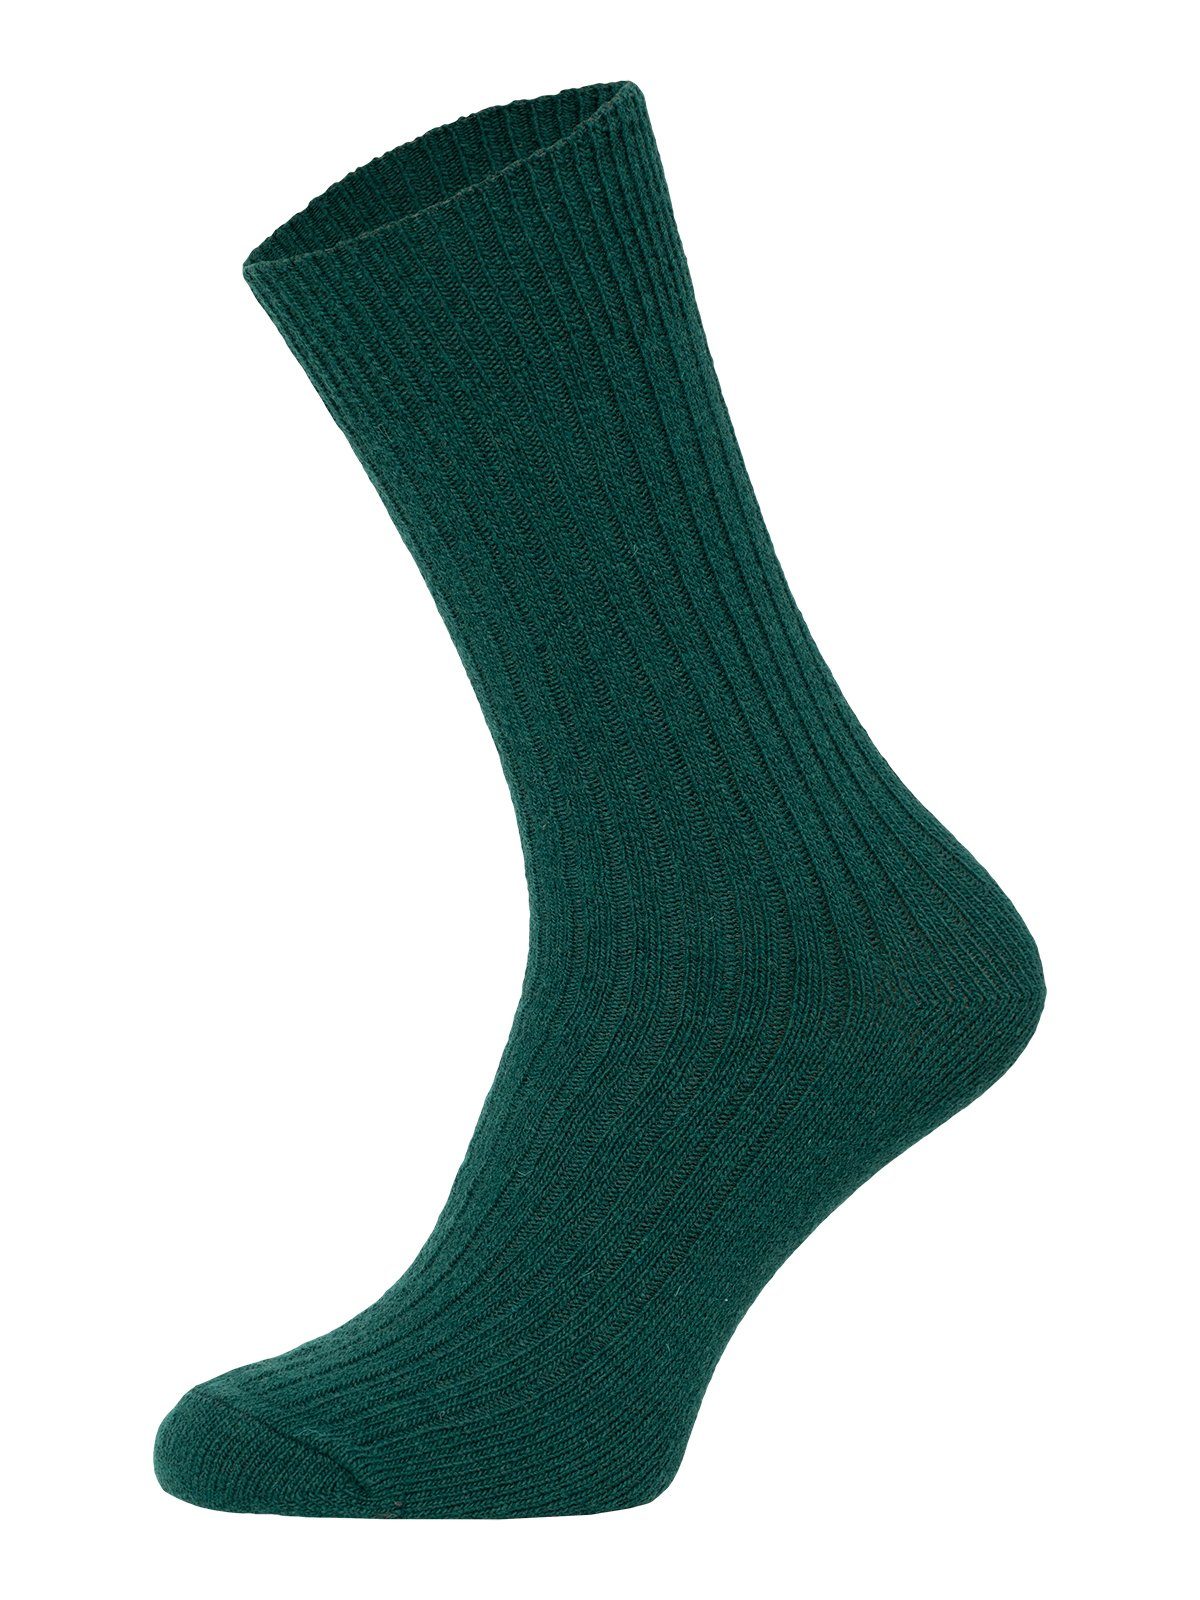 HomeOfSocks Socken Dünne Bunte Wollsocken mit 72% Wollanteil Hochwertige Uni Wollsocken Dünn Bunt Druckarm Tanne